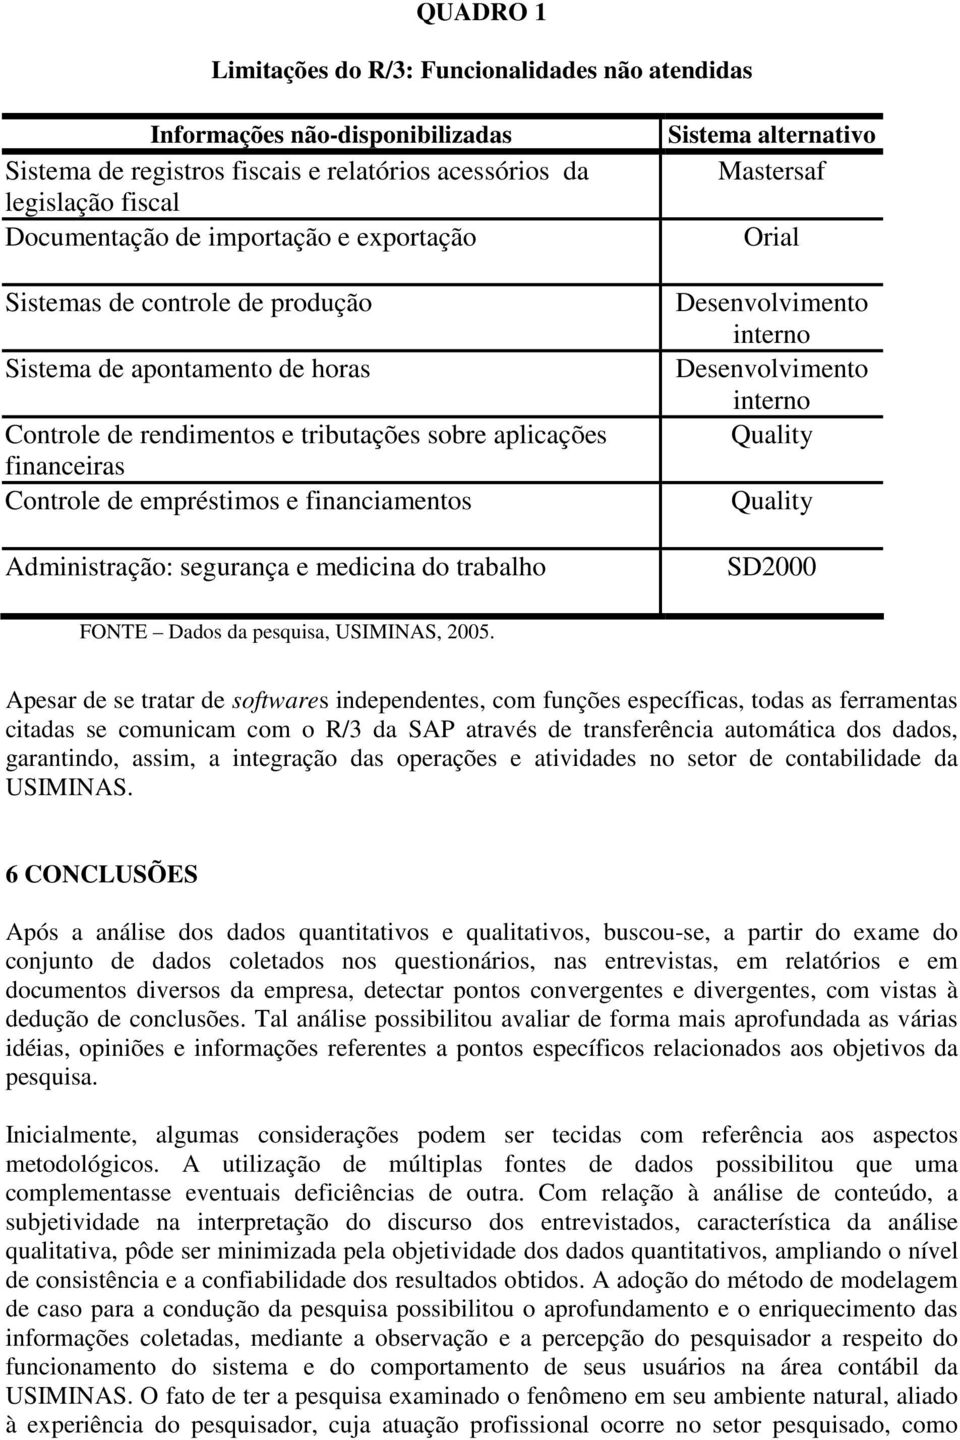 segurança e medicina do trabalho Sistema alternativo Mastersaf Orial Desenvolvimento interno Desenvolvimento interno Quality Quality SD2000 FONTE Dados da pesquisa, USIMINAS, 2005.